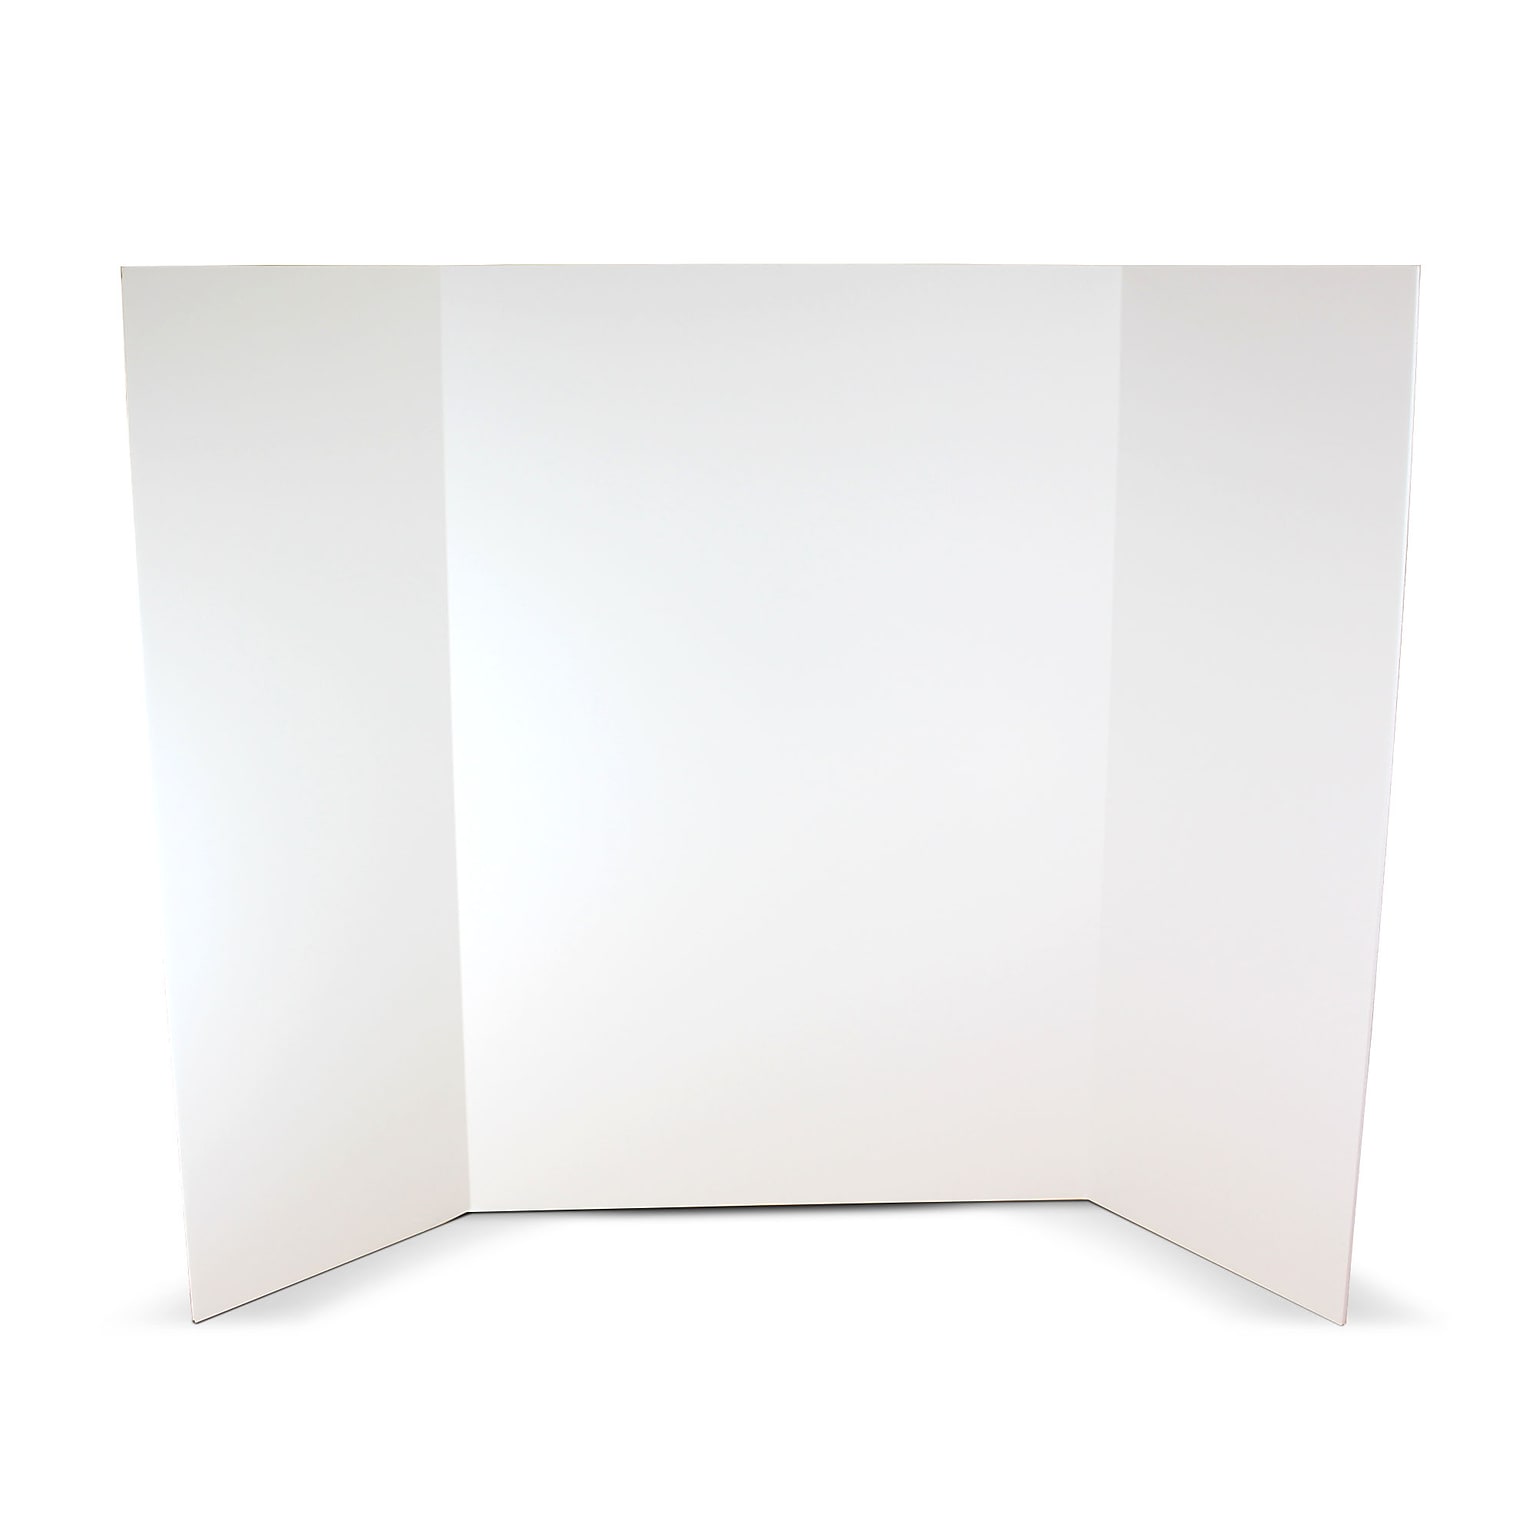 Flipside Foam Project Board, 36 x 48, White, 10/Pack (FLP3004810)